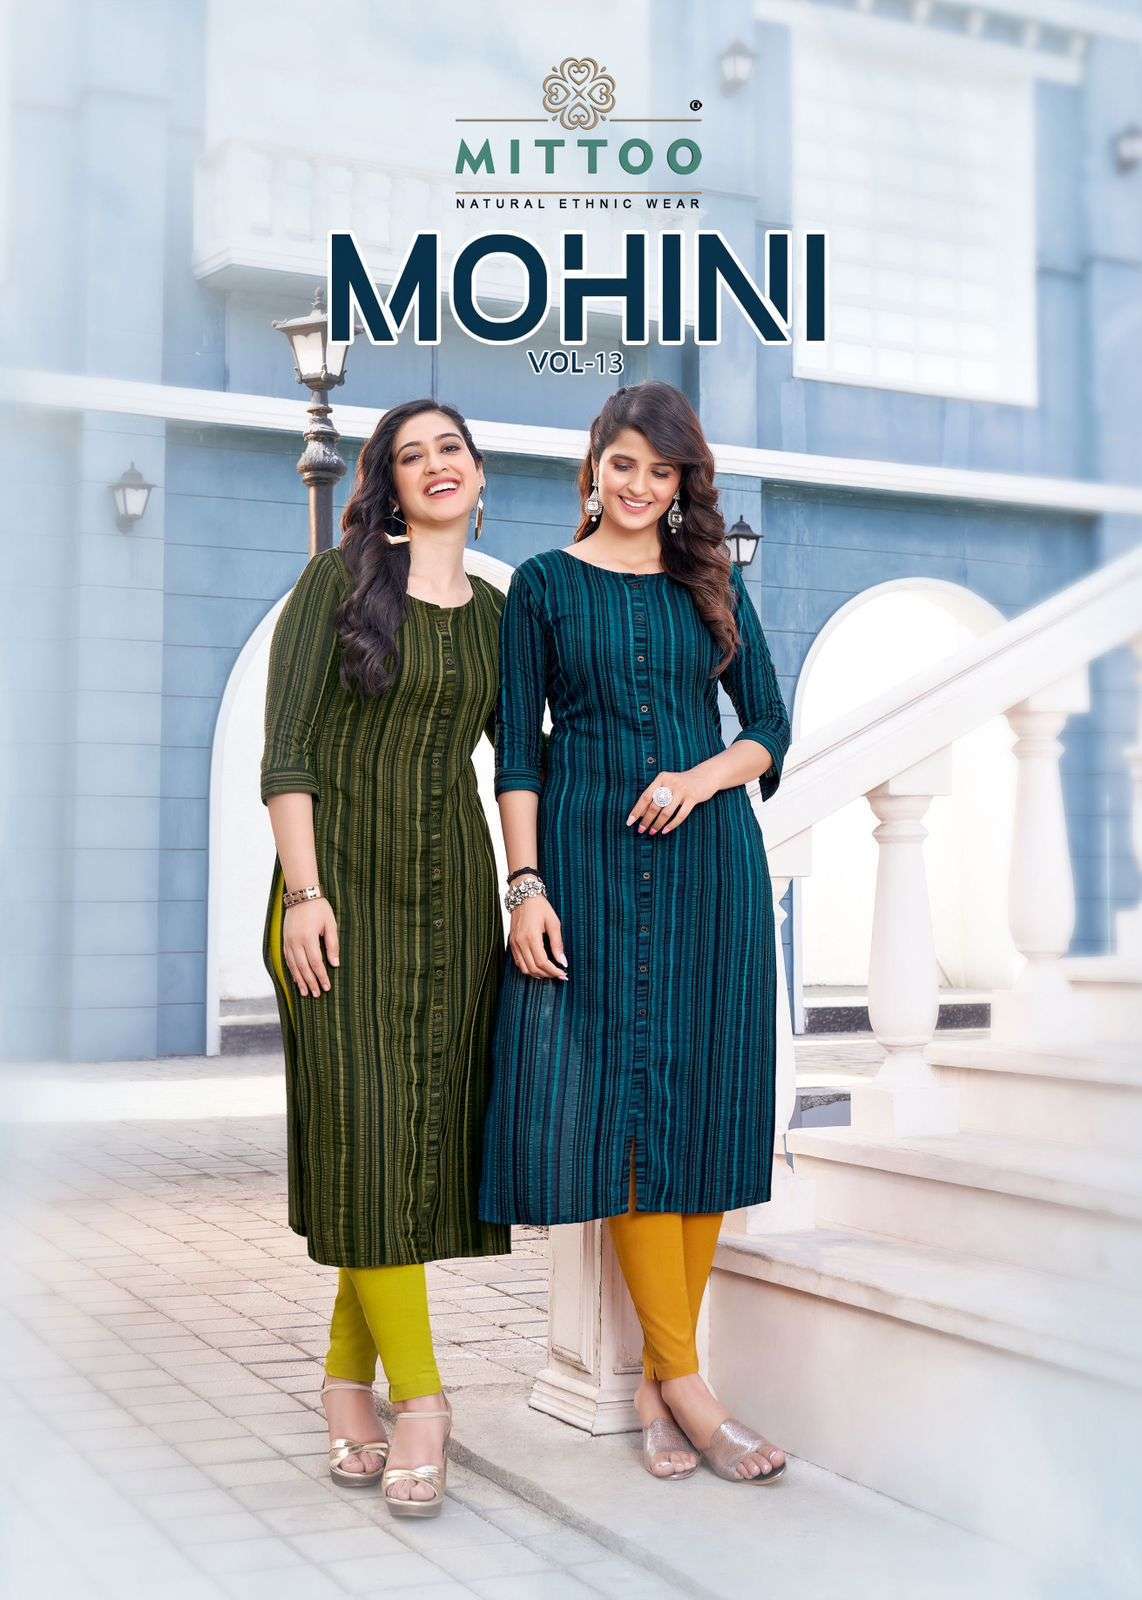 mittoo mohini vol 13 series 4097-4100 Weaving Strips kurti pant 